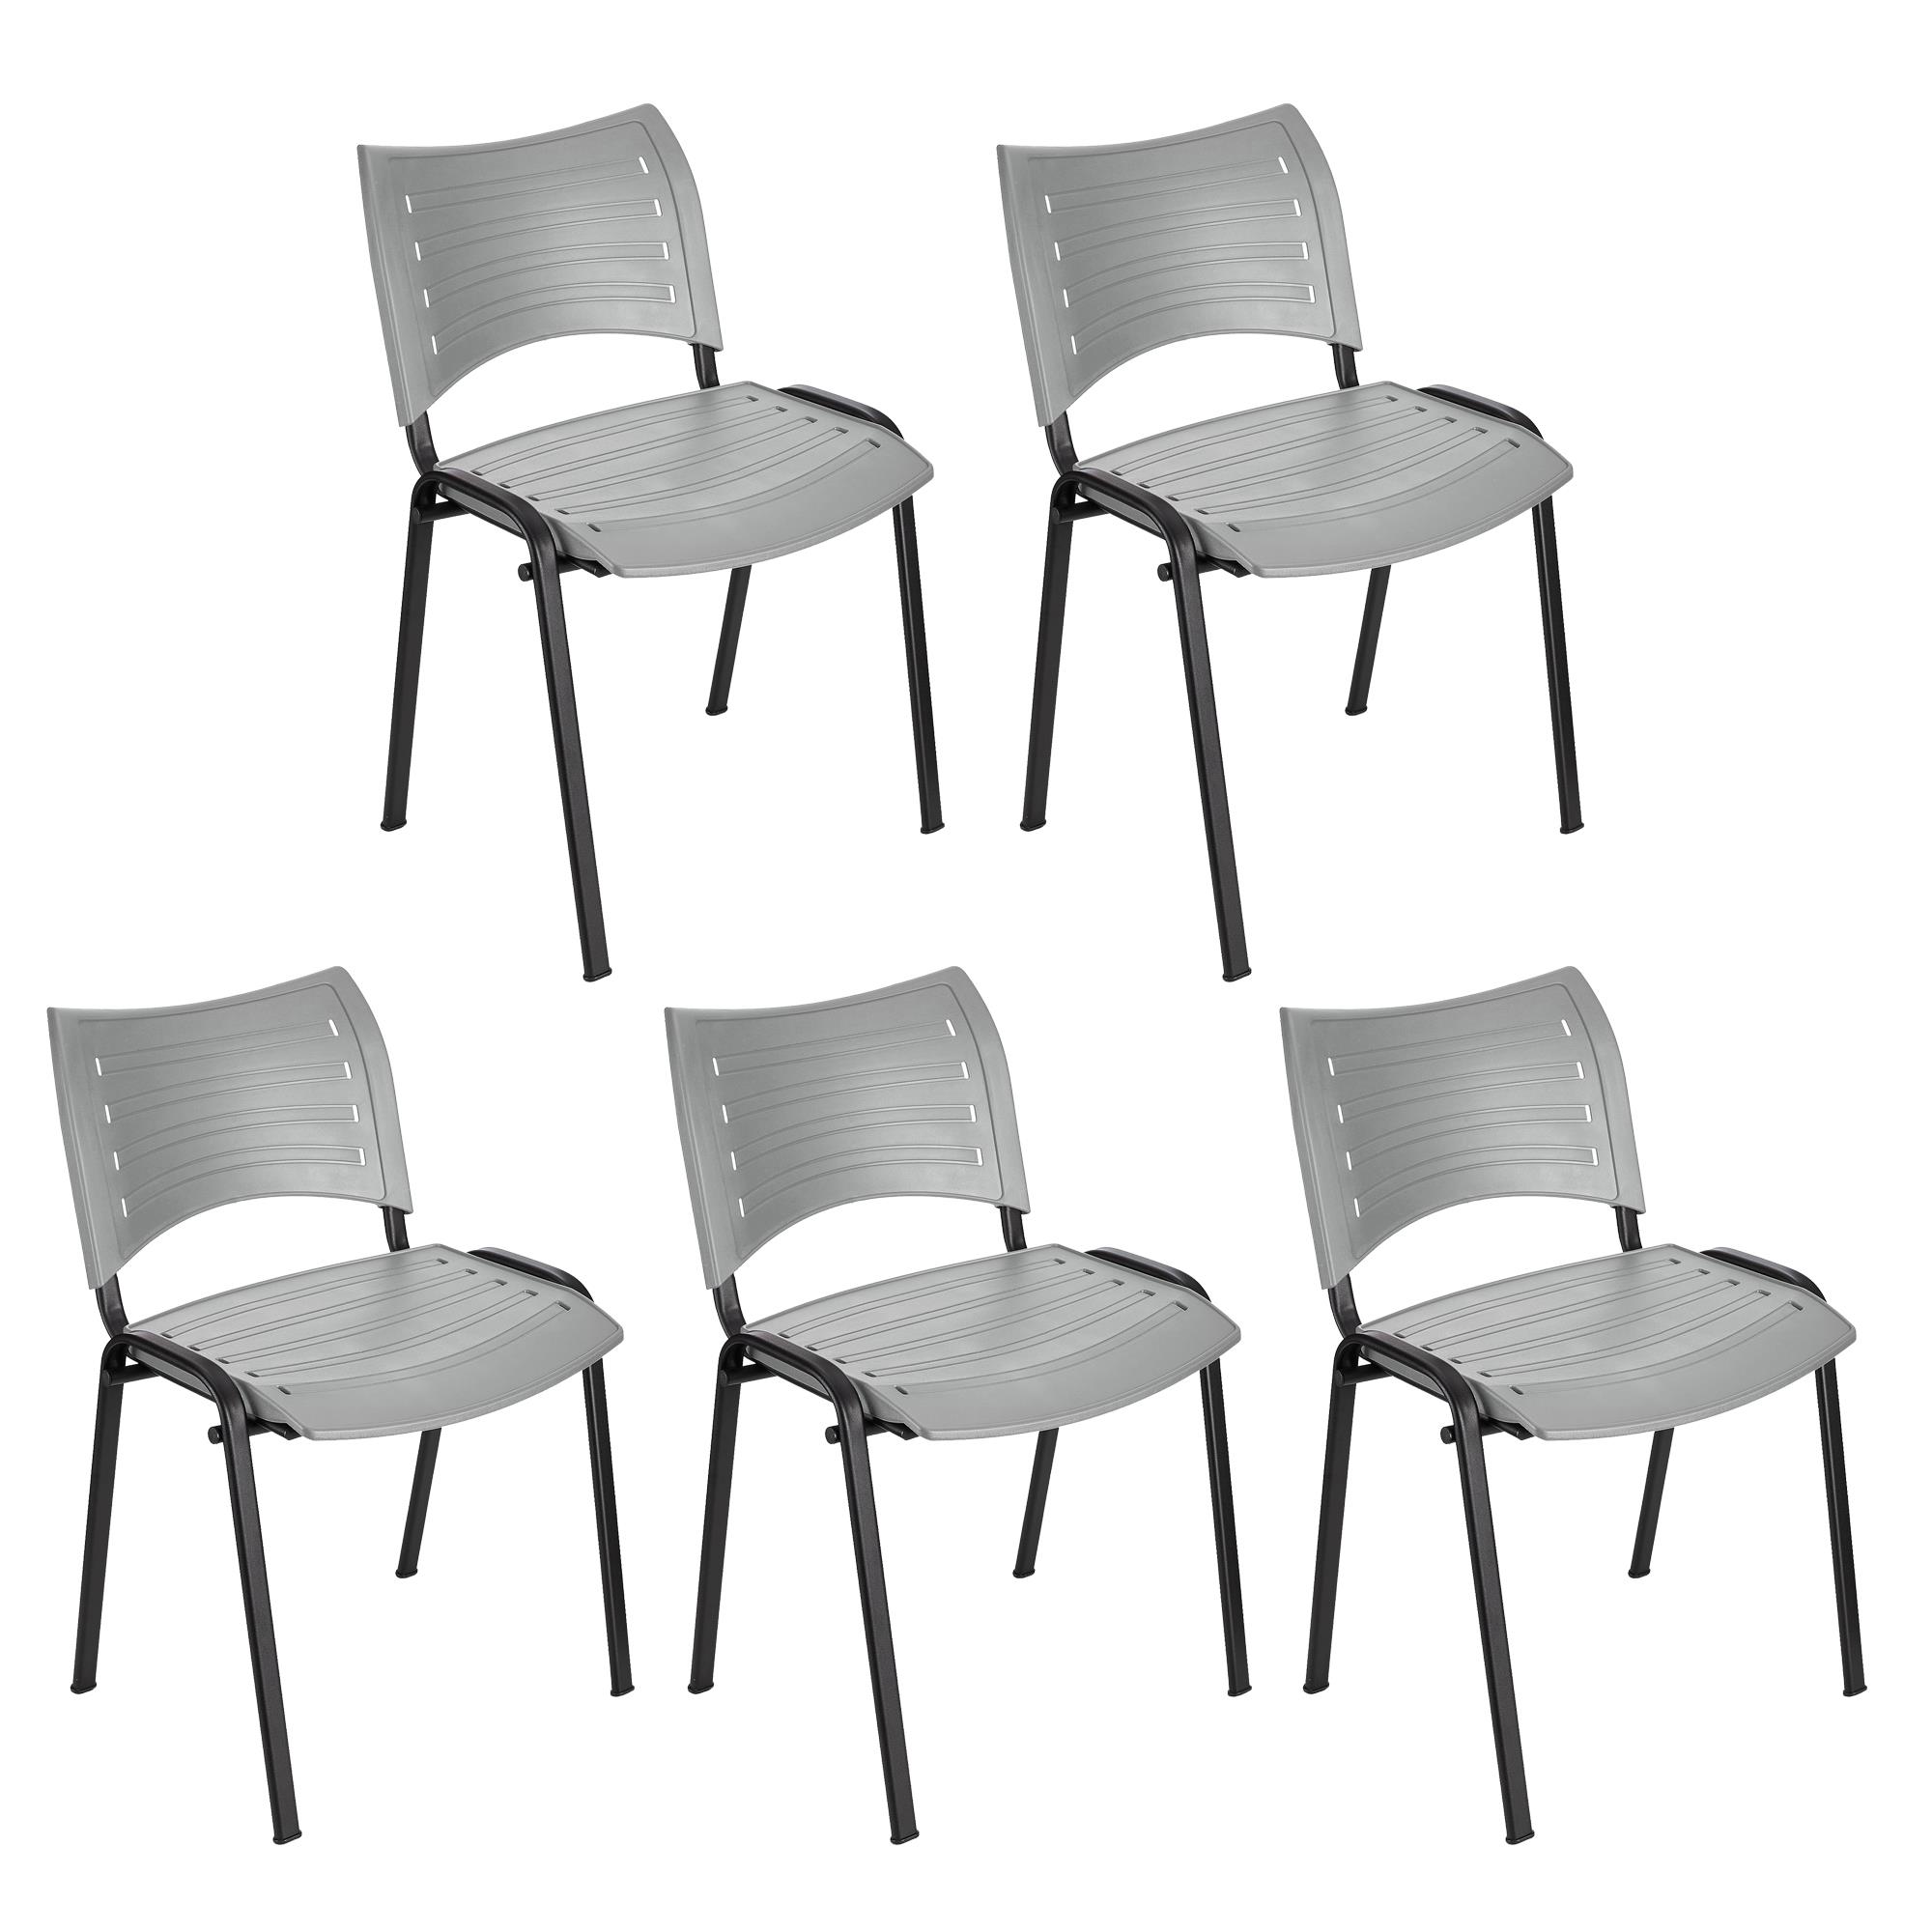 Lote 5 Cadeiras de Visita ELVA, Confortável e Prática, Pernas Pretas, Cor Cinzento